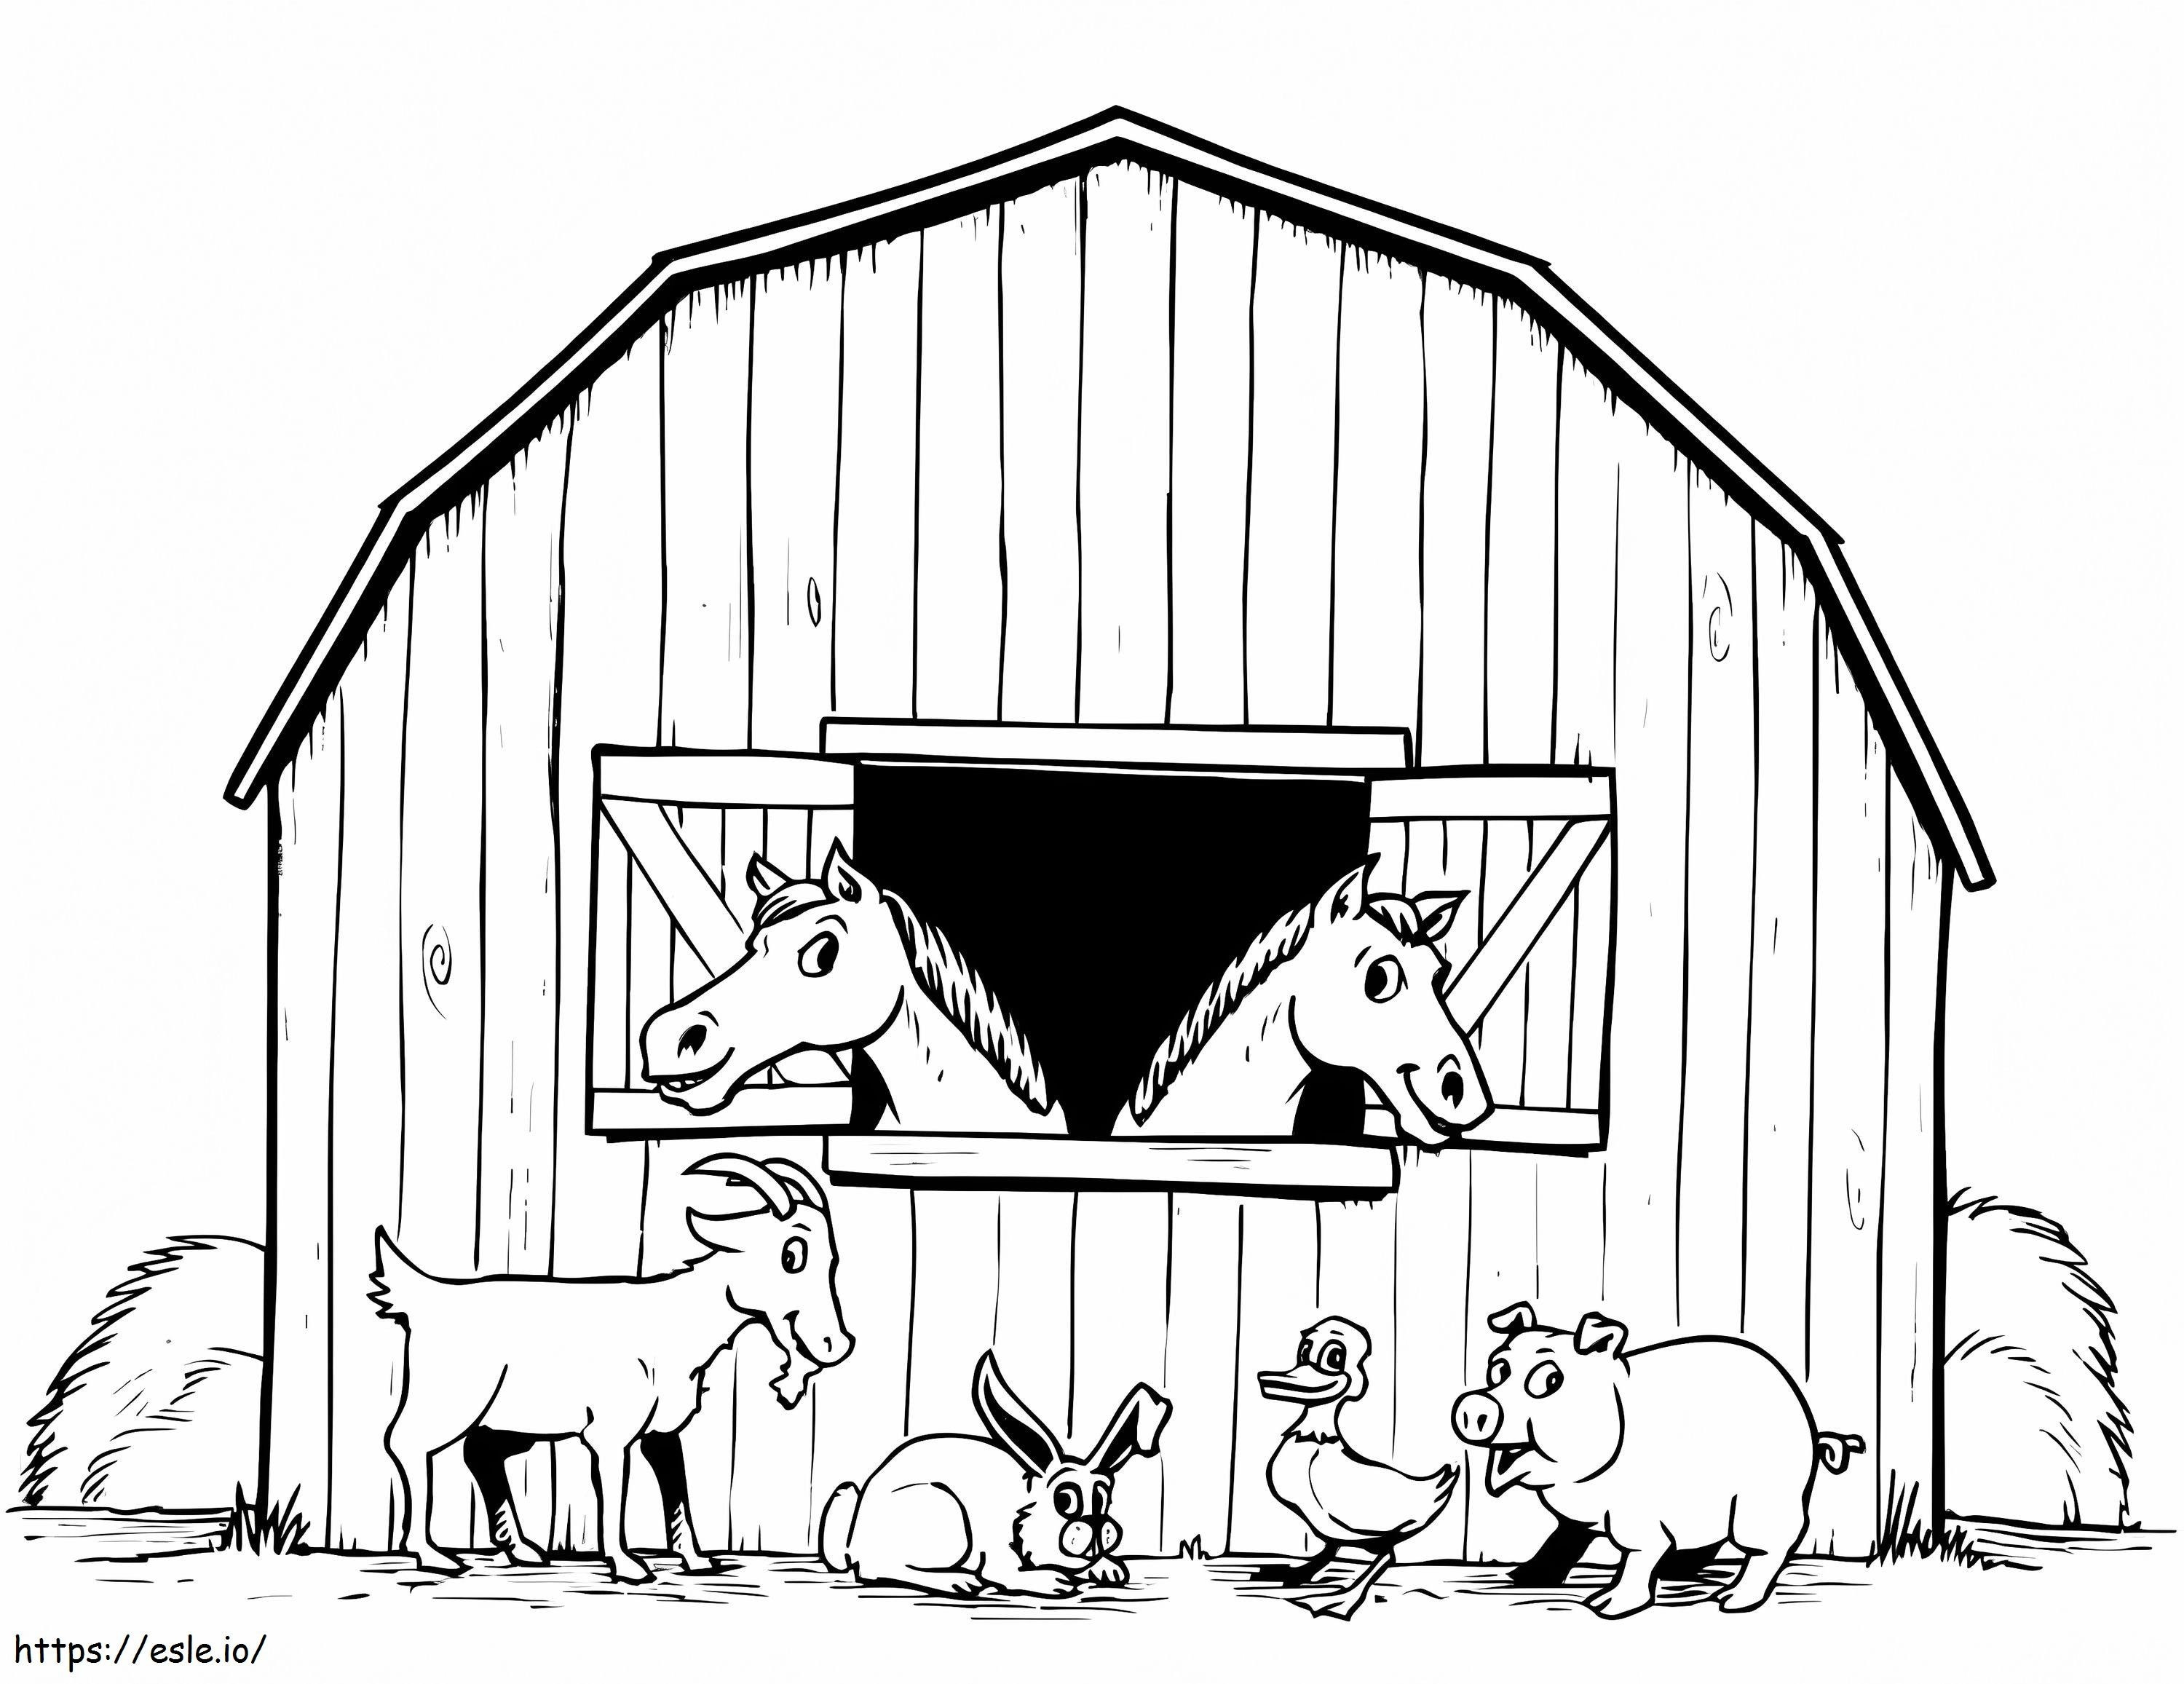 Barnyard Animals coloring page